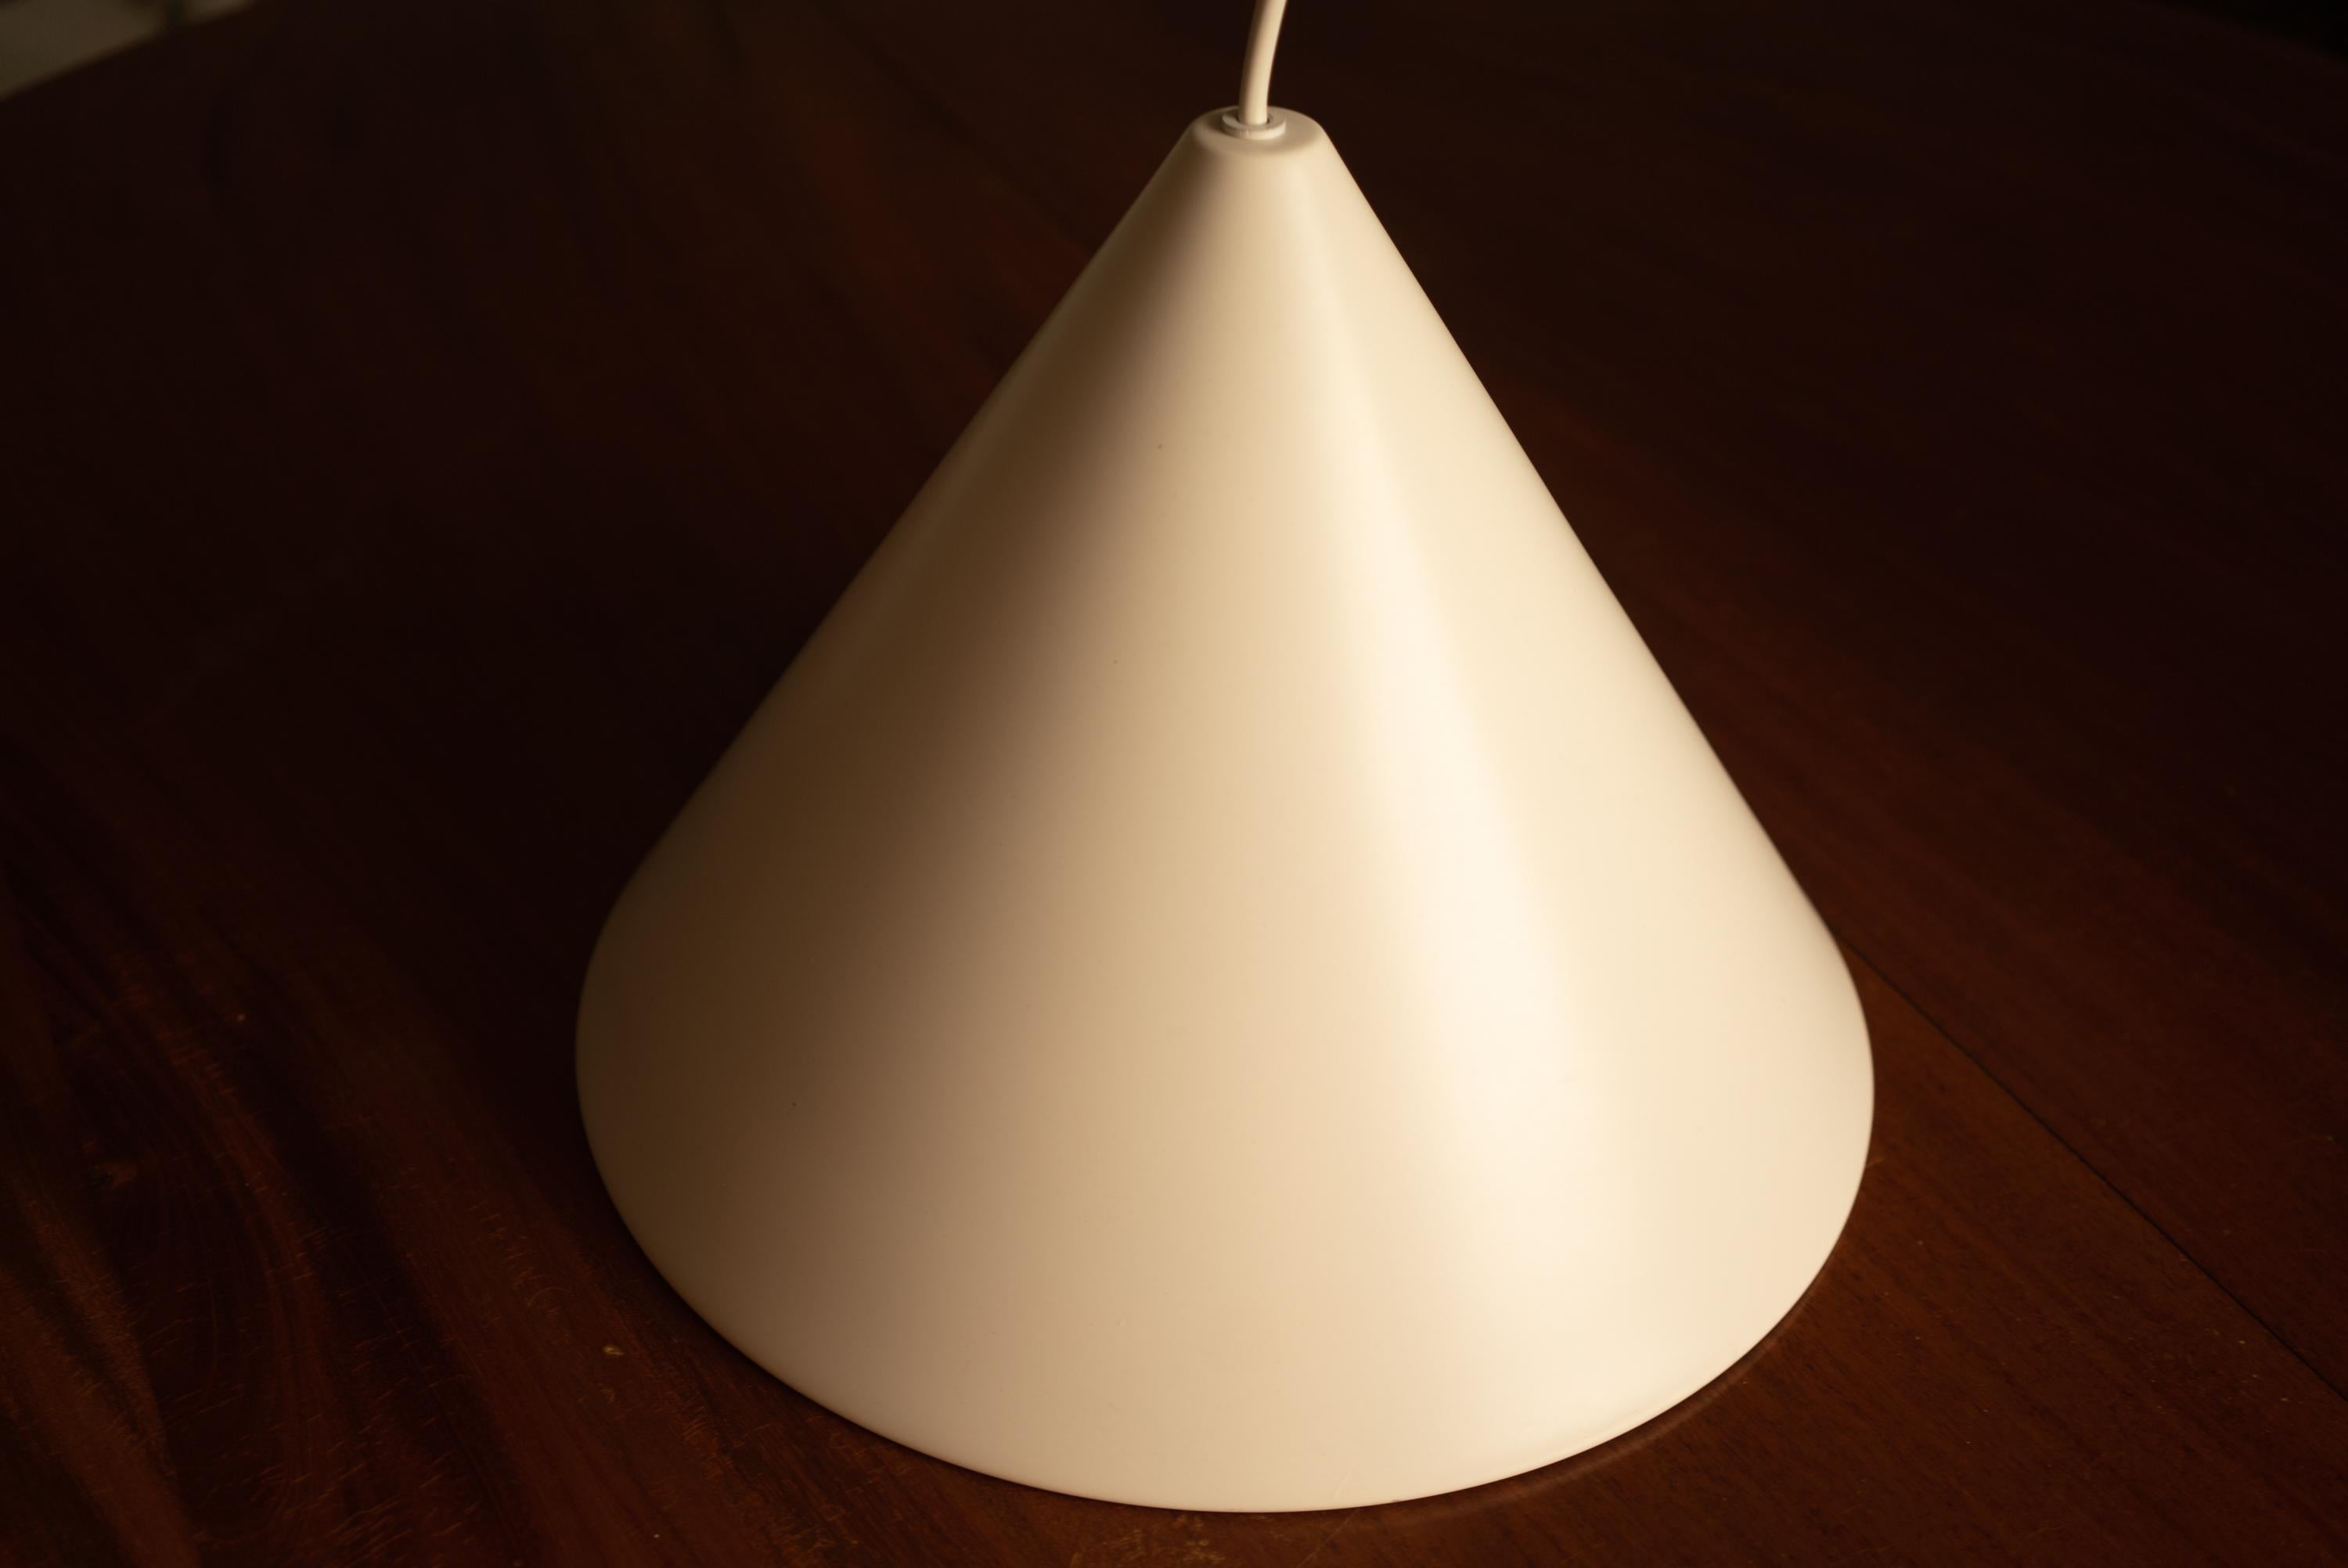 Petite suspension blanche Arne Jacobsen Billiard conçue par Arne Jacobsen pour Louis Poulsen dans les années 1960. Ces lampes fournissent une lumière directe vers le bas et sont souvent utilisées au-dessus des tables de billard. L'état est encore